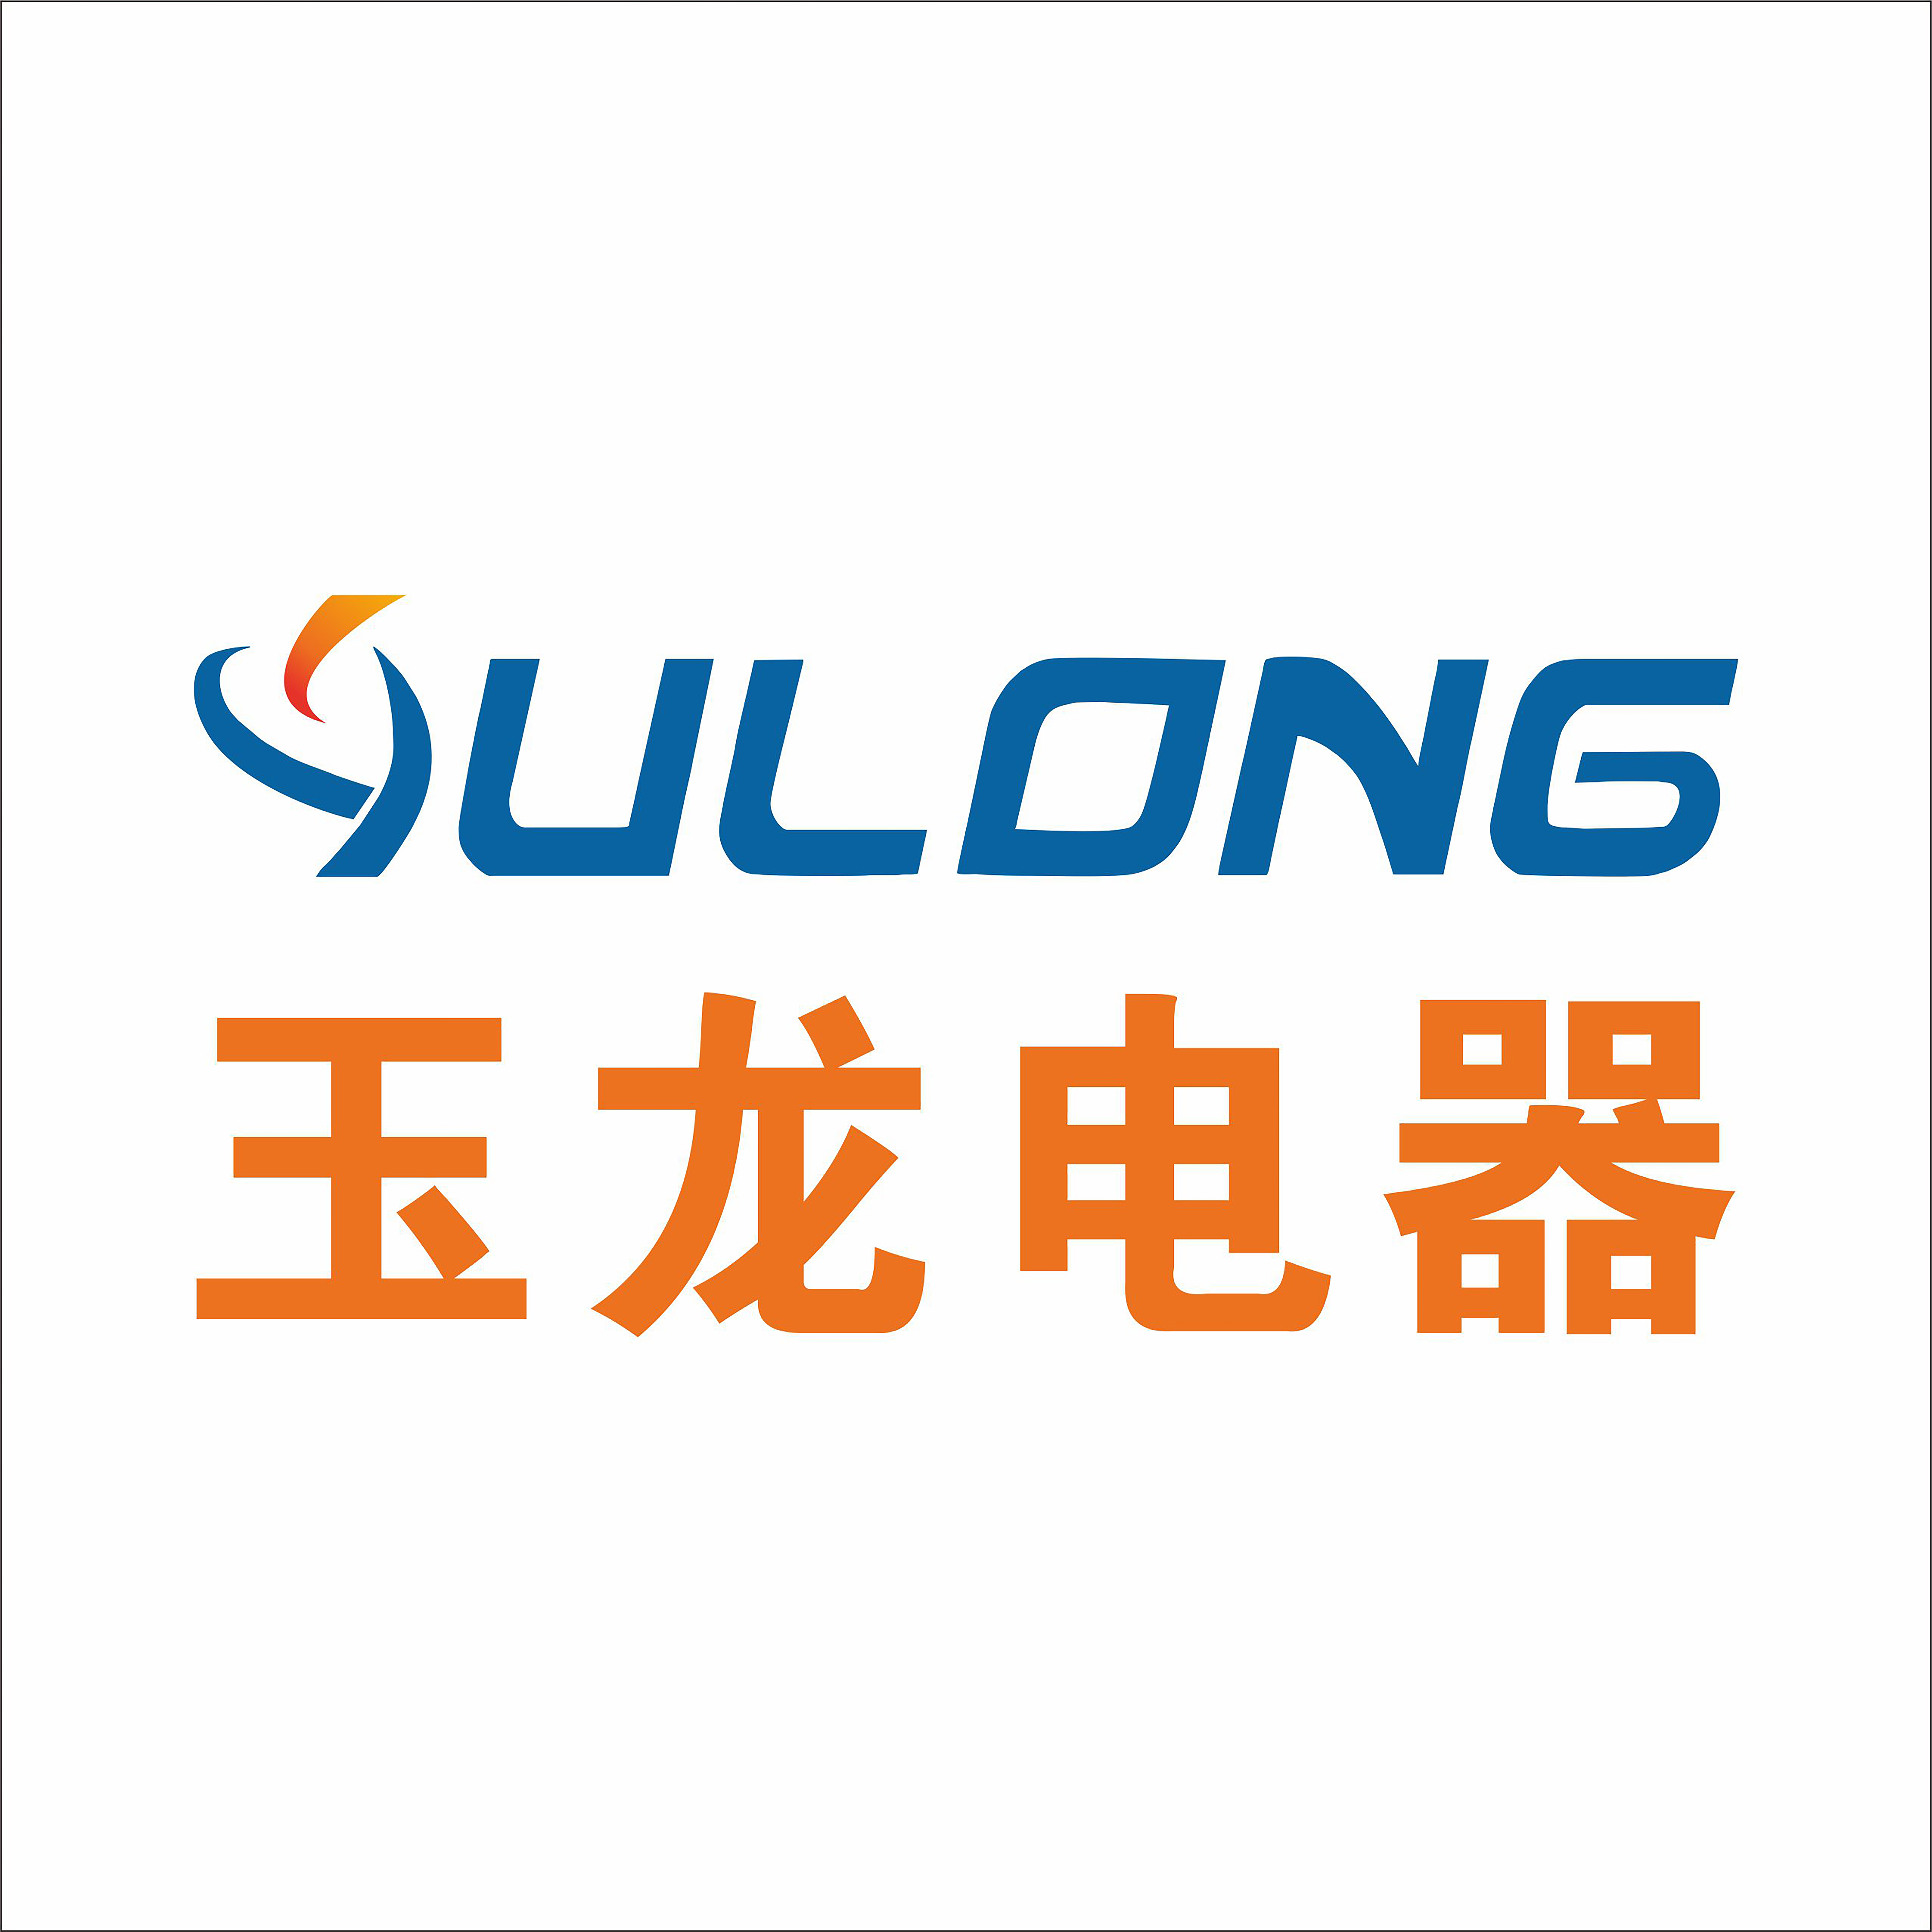 CiXi Yulong Electric Appliances Co.,Ltd.